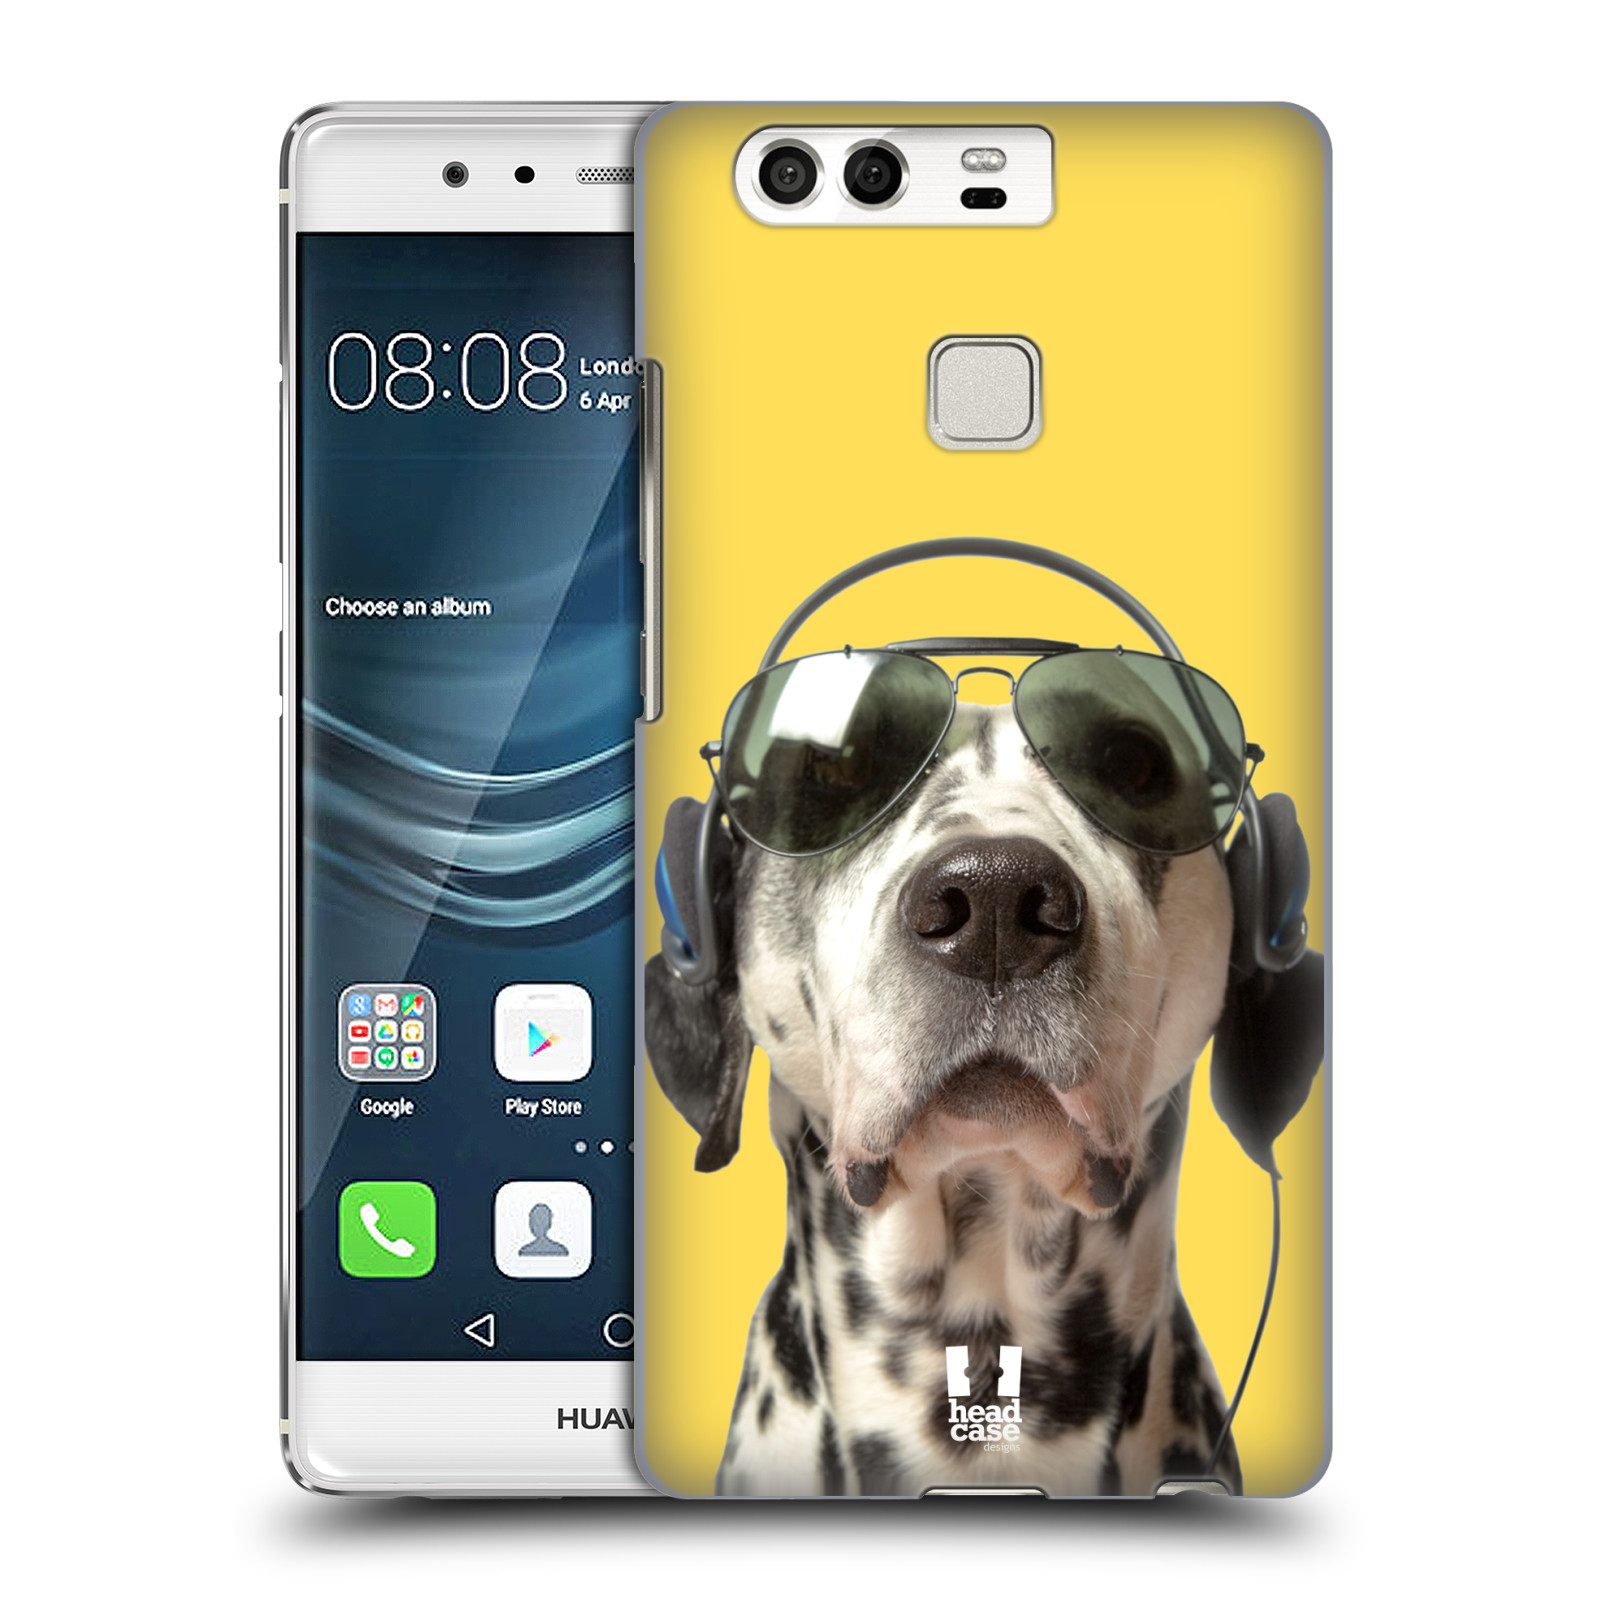 HEAD CASE plastový obal na mobil Huawei P9 / P9 DUAL SIM vzor Legrační zvířátka dalmatin se sluchátky žlutá